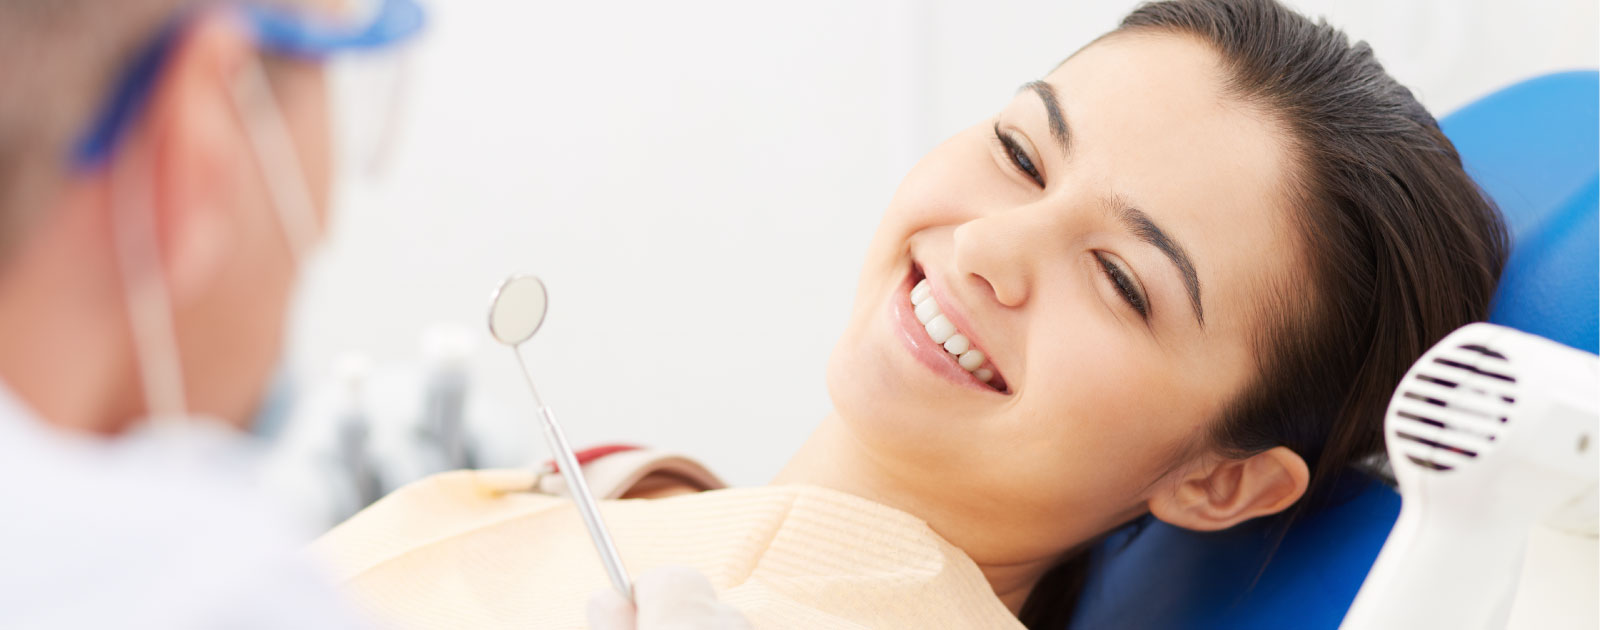 Clinica odontoiatrica dentista seregno abbiategrasso